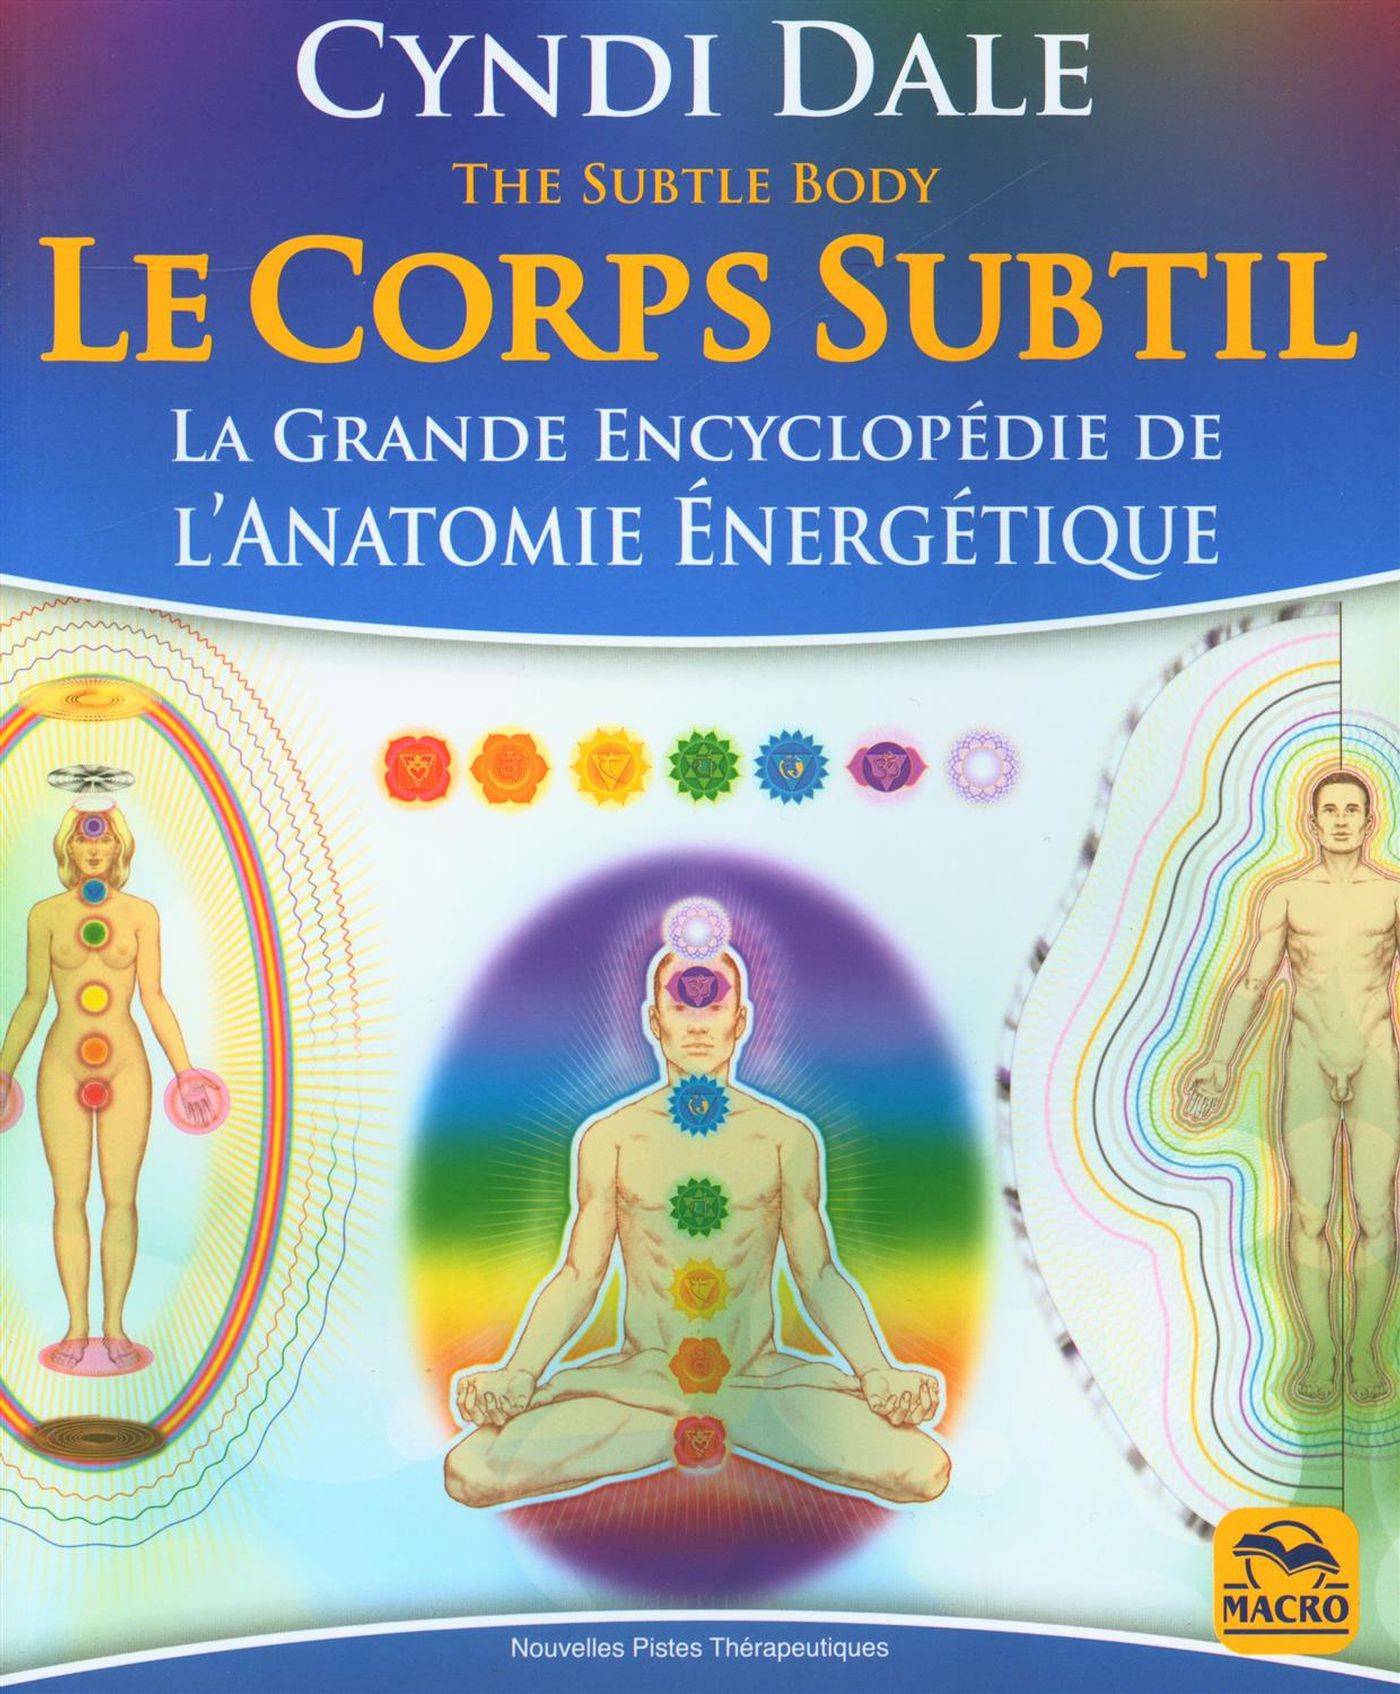 Le corps subtil : La grande encyclopédie de l'anatomie énergétique - Cyndi Dale